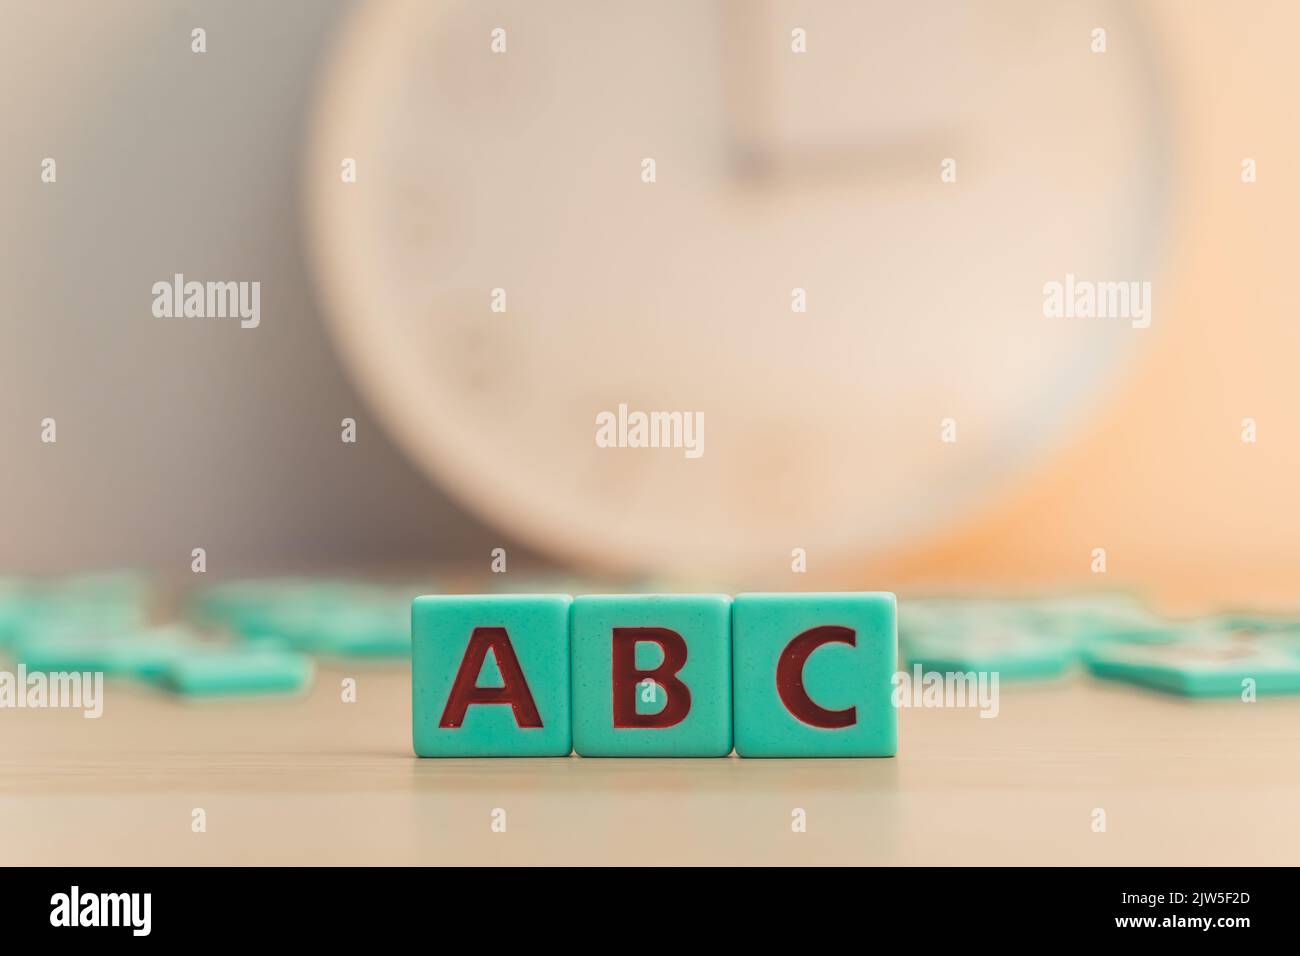 El alfabeto ABC hecho de pequeños cubos coloridos con letras. Comienzos de la escuela. Desarrollo infantil. Fotografía de alta calidad Foto de stock